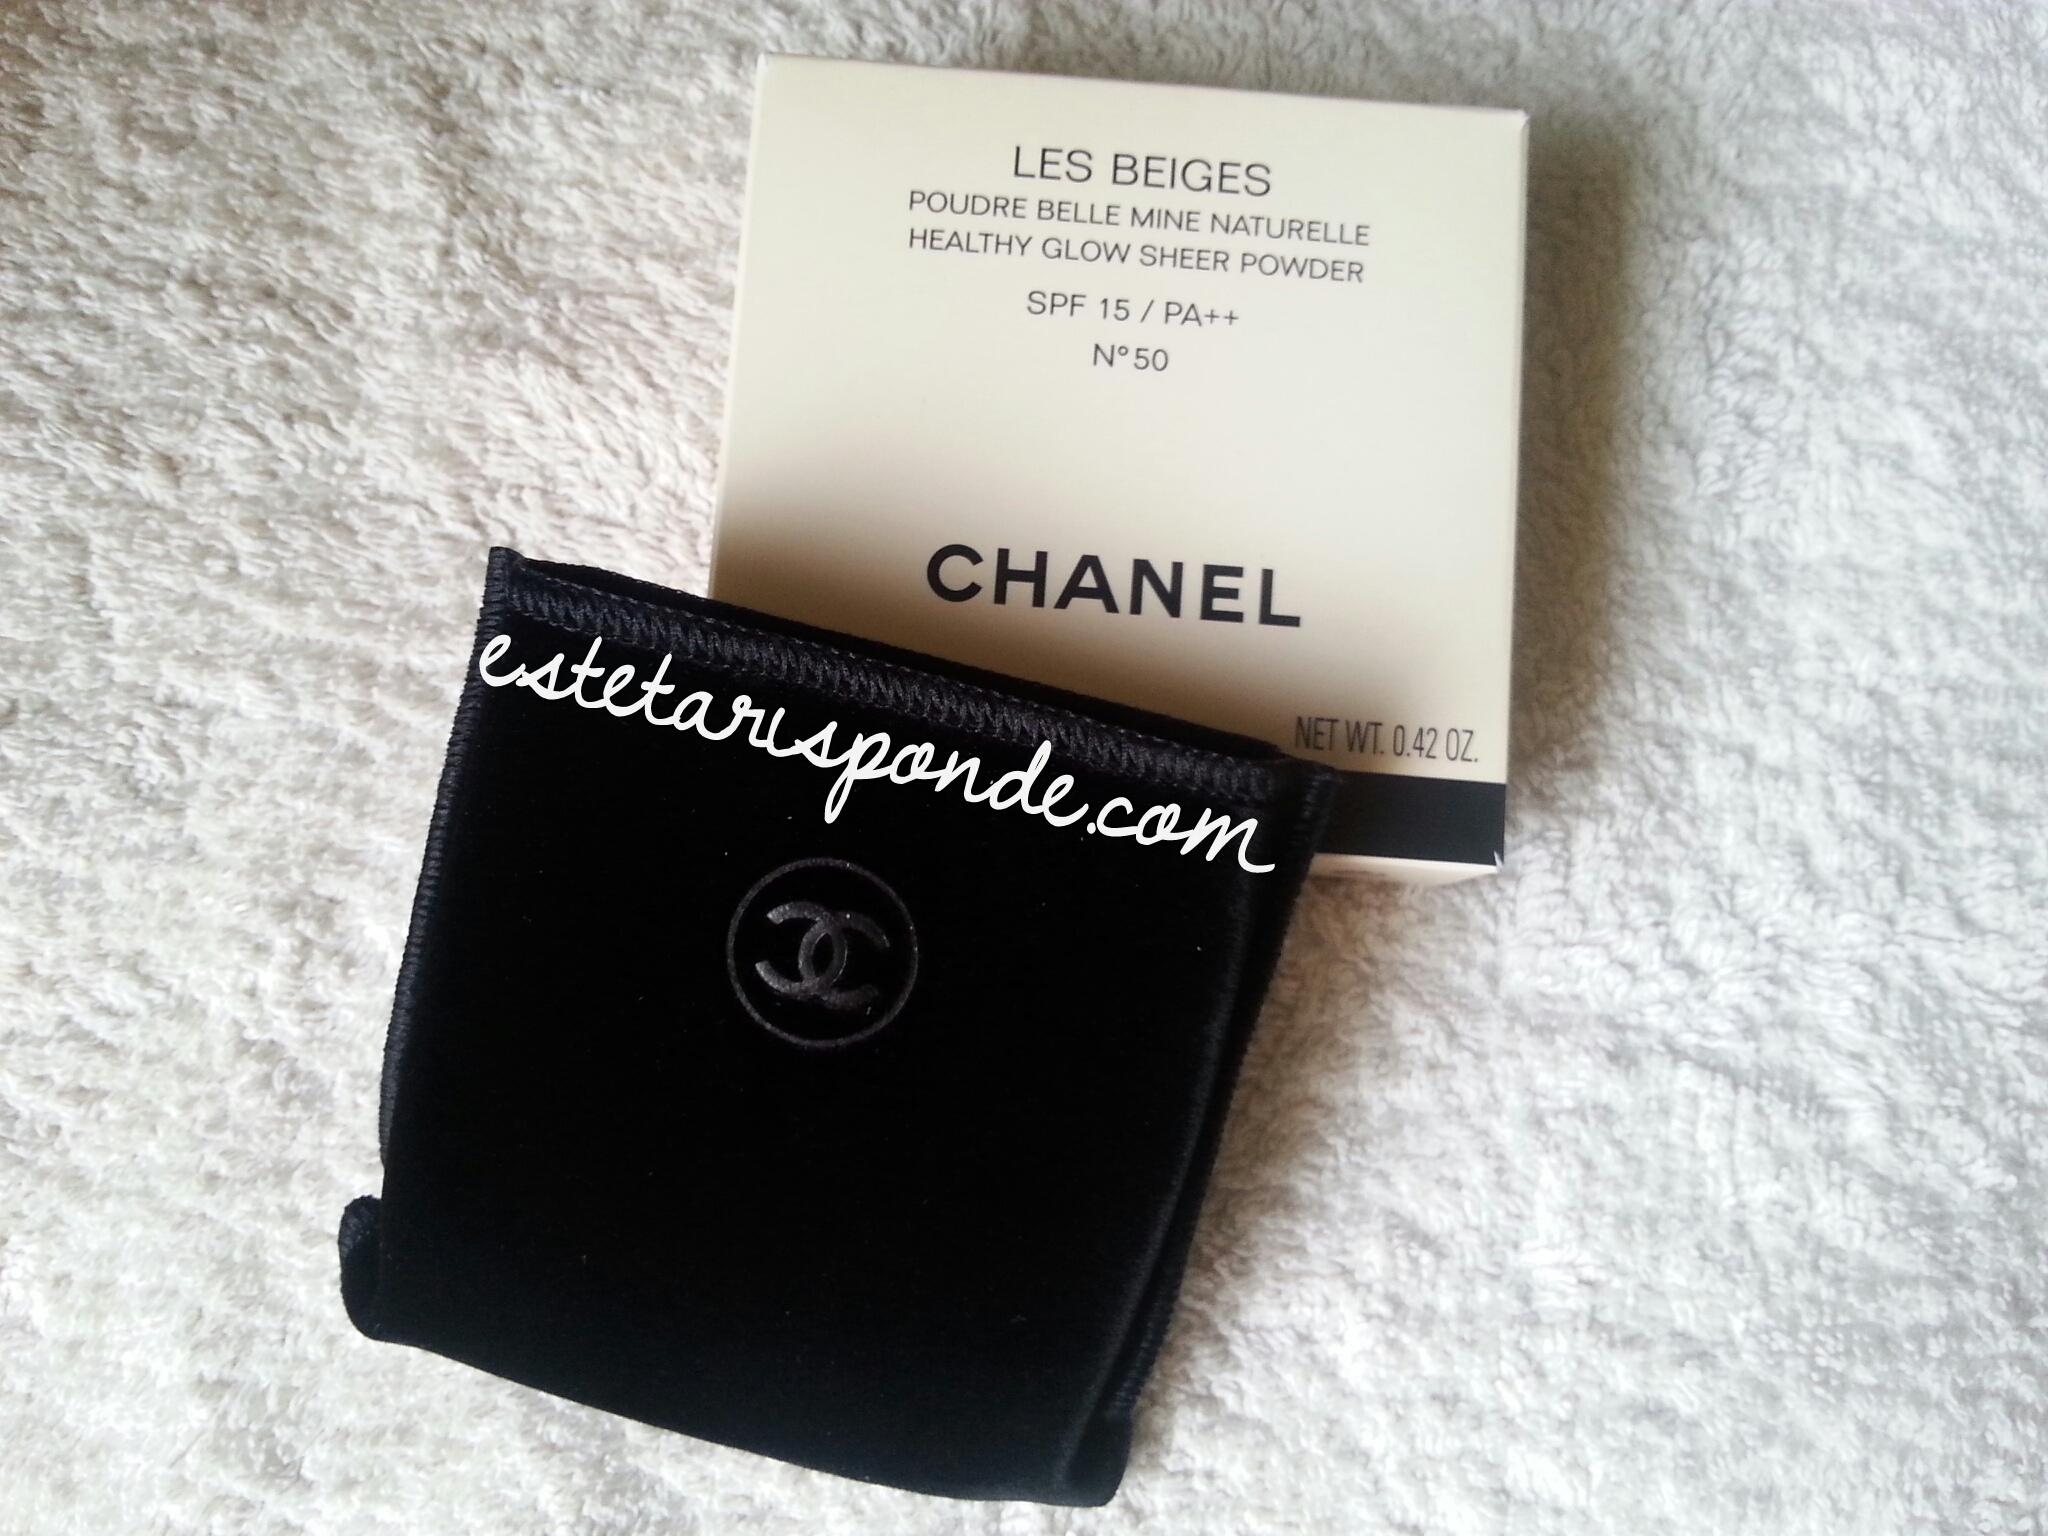 Les Beiges de Chanel